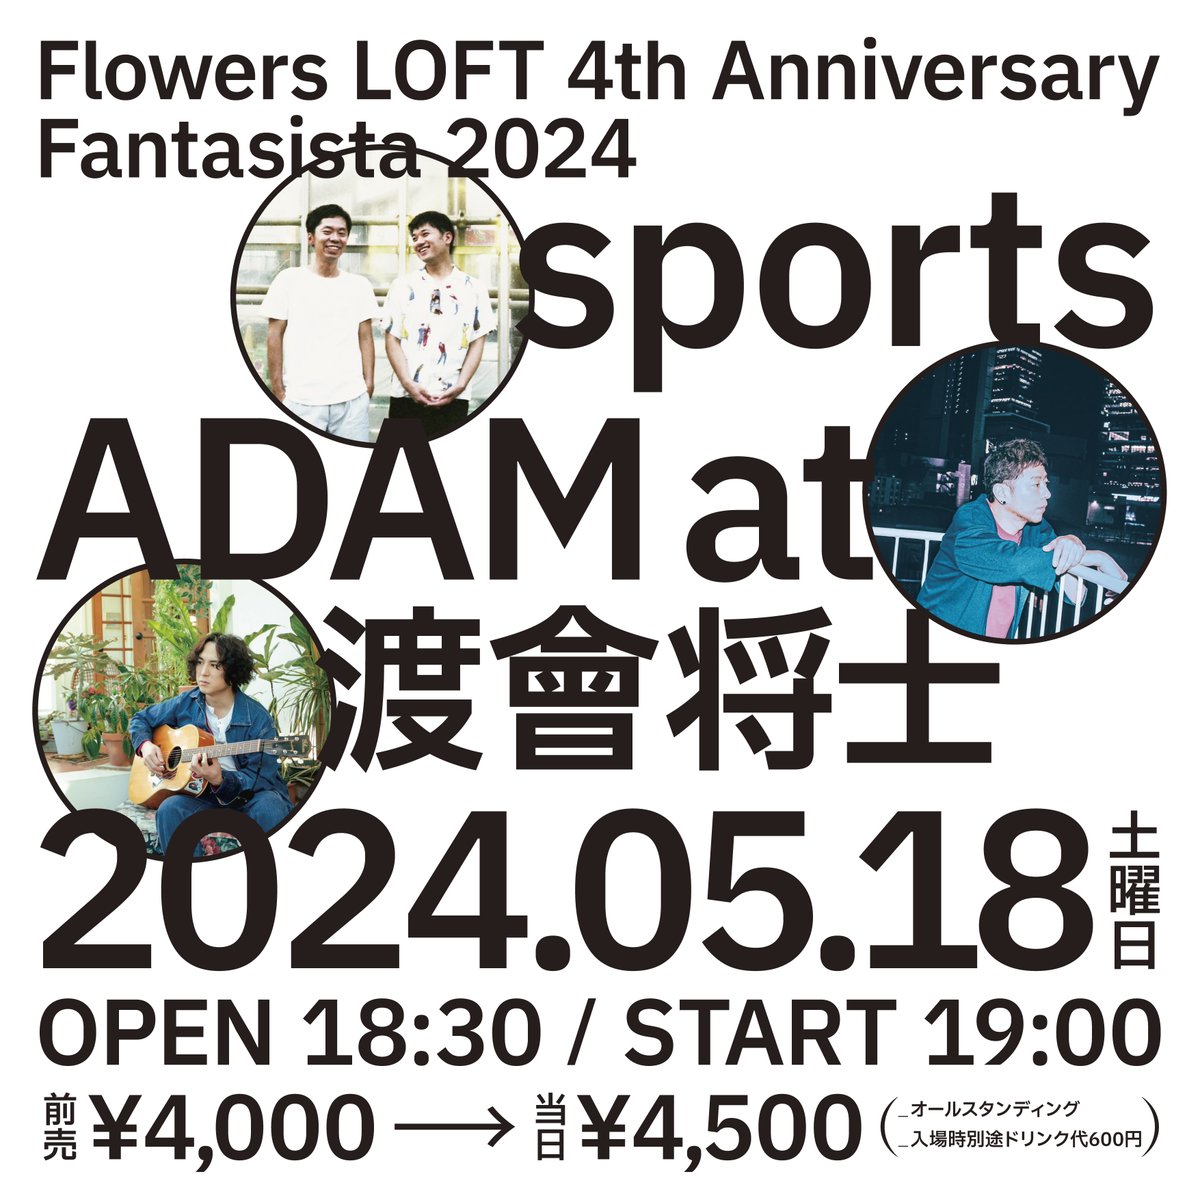 🪅本日の夜公演：当日券あり🪅
2024.5.18（土）
Flowers LOFT 4th Anniversary
Fantasista 2024

sports
ADAM at
渡會将士

OPEN 18:30 / START 19:00
✅当日券¥4,500(+1D¥600)で販売決定
✅OPEN後受付でクローク有り(¥500)
お手荷物最小限でお願いいたします

#フラワーズロフト